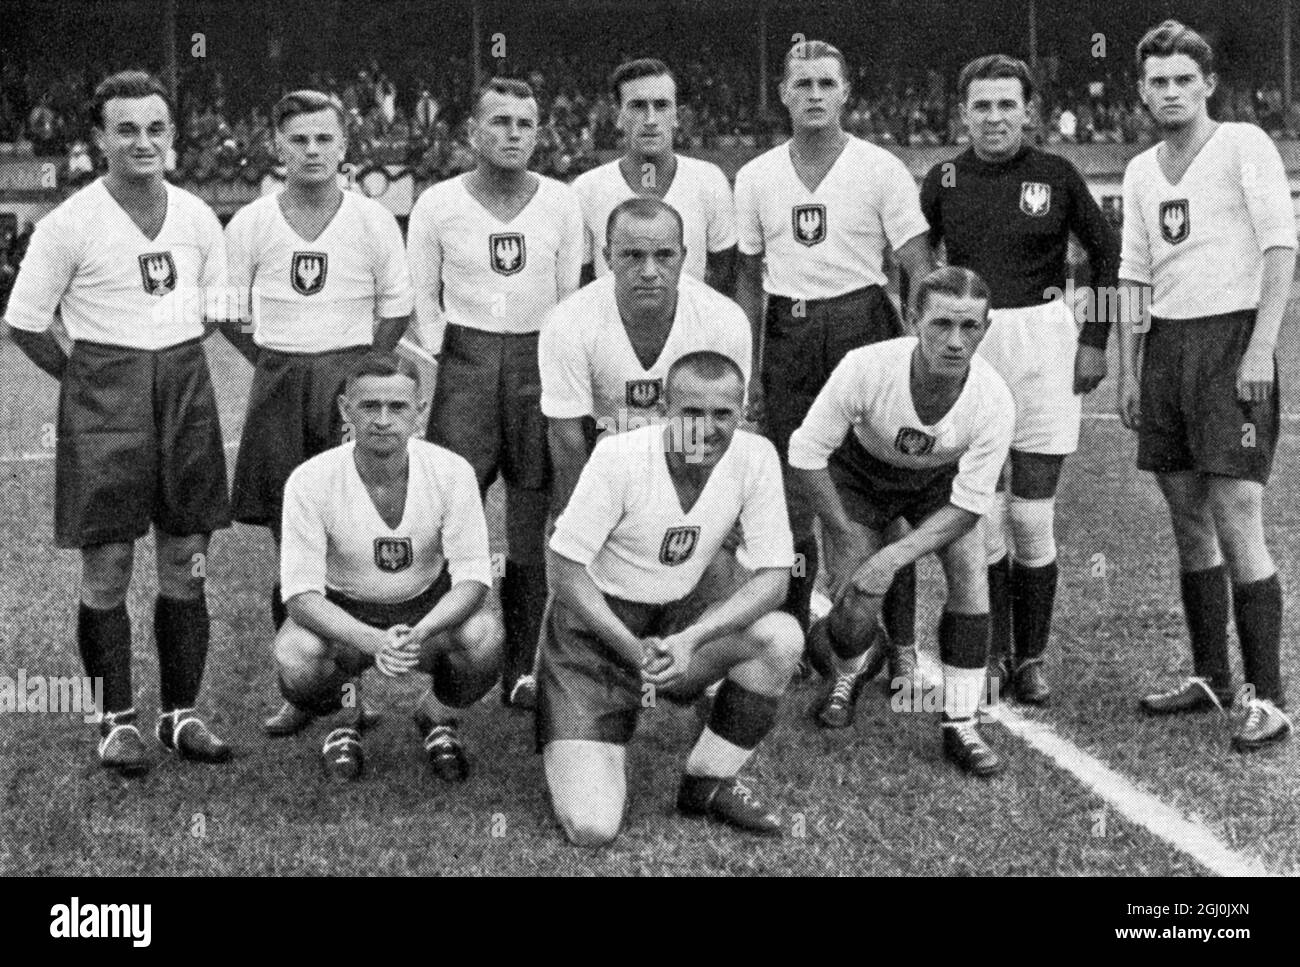 1936 Jeux Olympiques, Berlin - équipes de football du monde entier - Pologne Fussballmannschaften aus aller Welt - Polen Banque D'Images